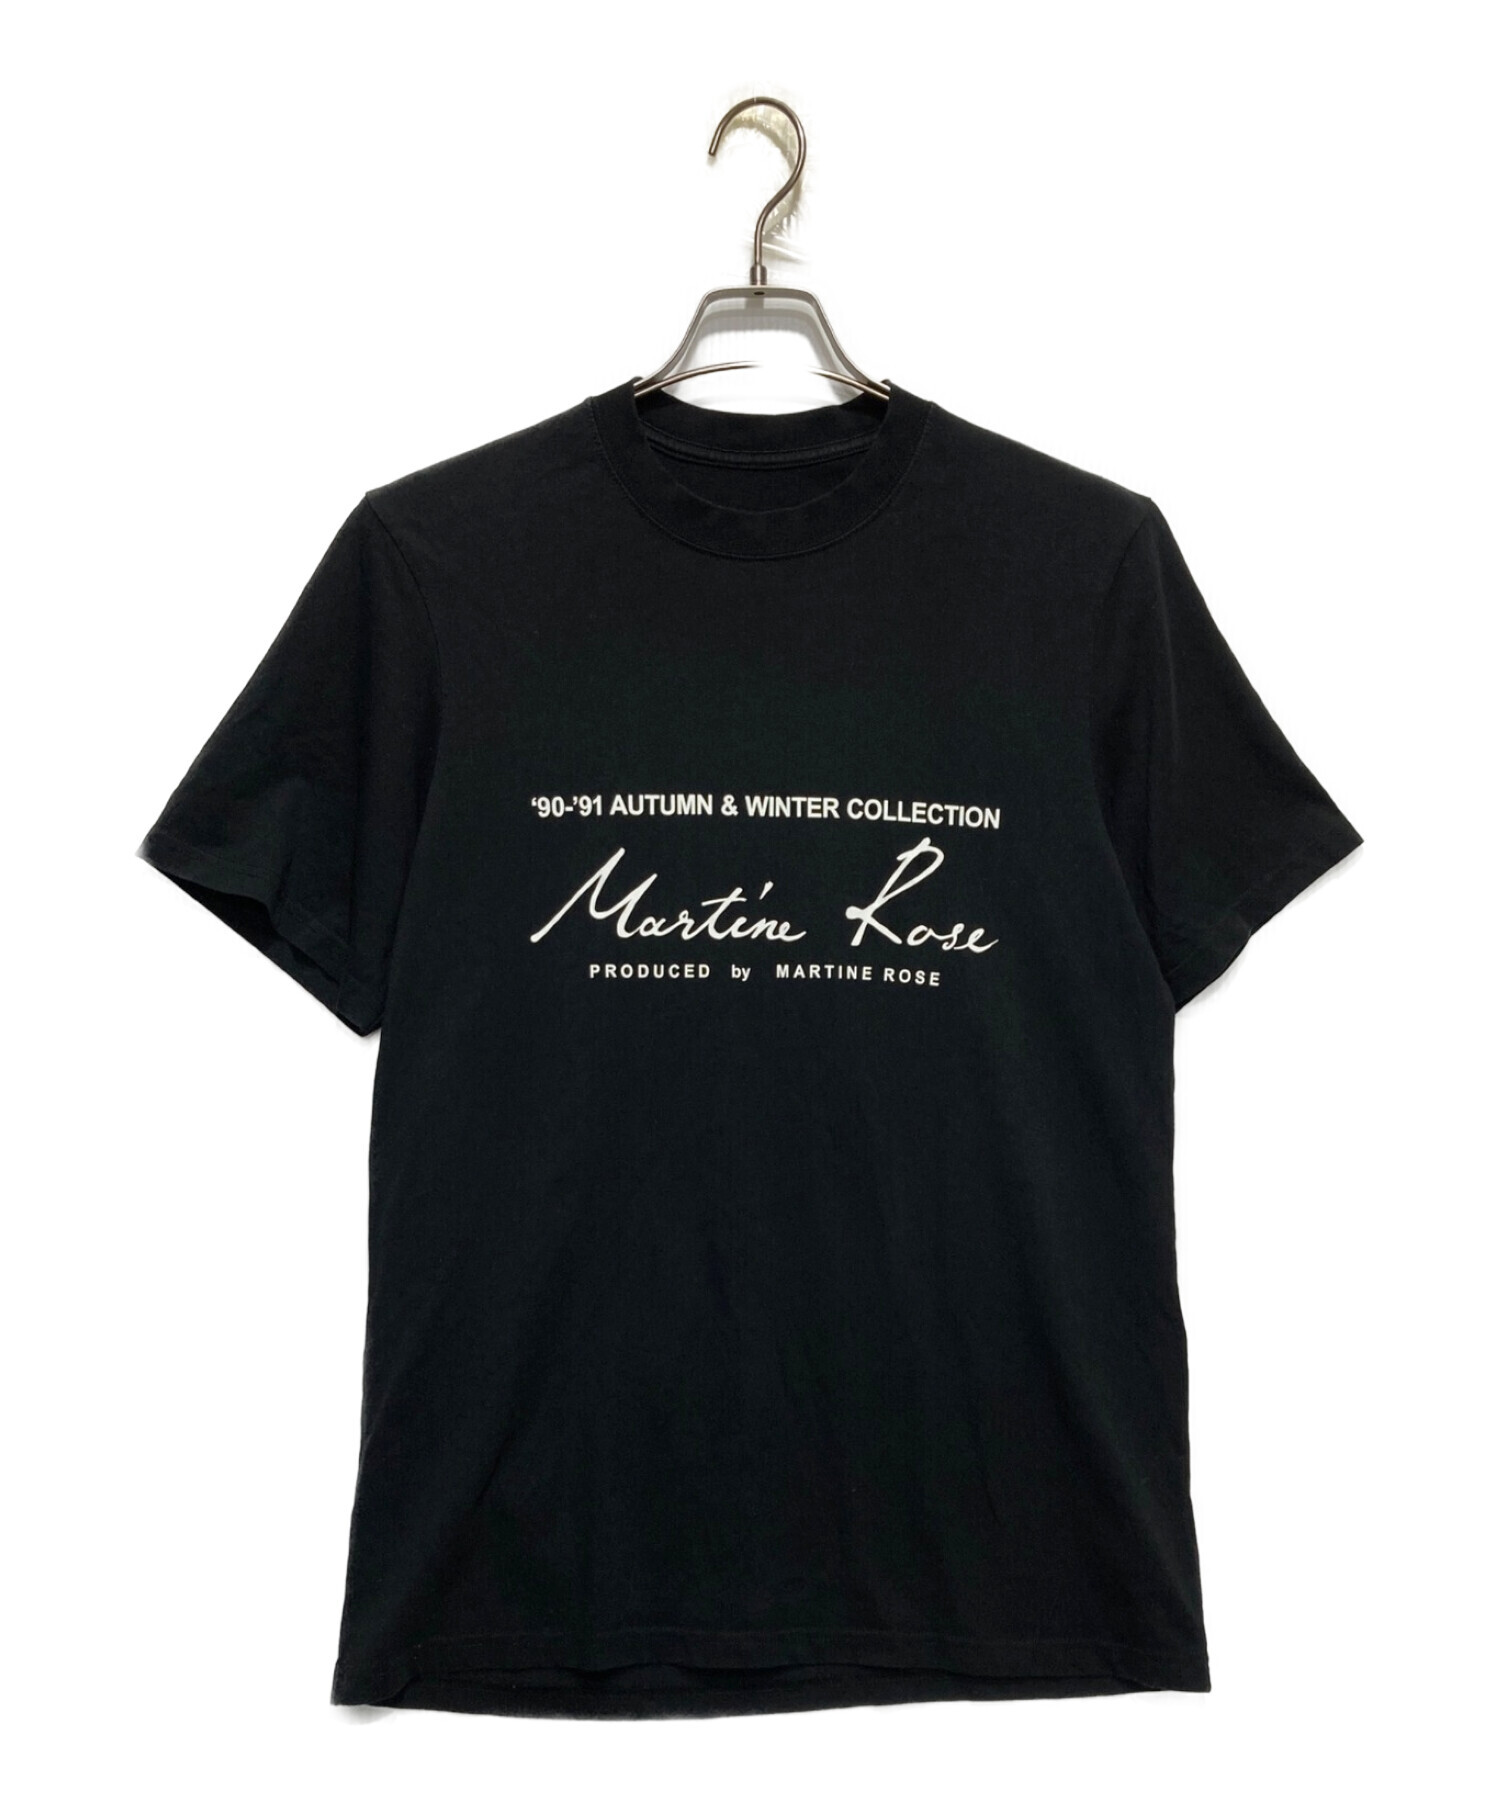 MARTINE ROSE (マーティン・ローズ) プリントTシャツ ブラック サイズ:M